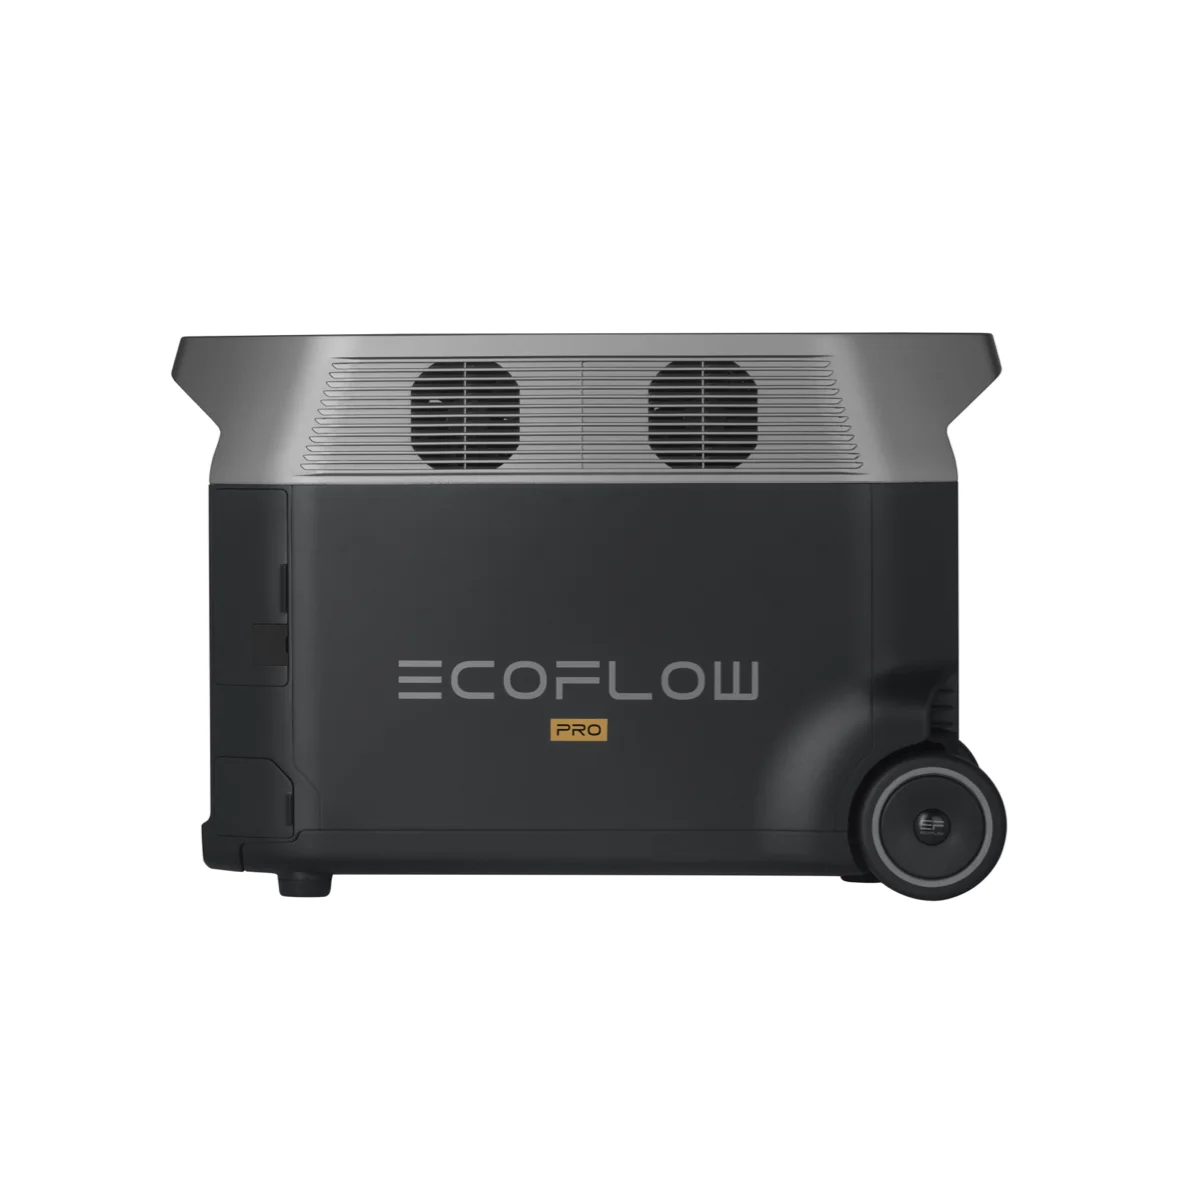 Ecoflow Pro 3600w便携式电站太阳能发电机，适用于家庭备用应急户外野营或旅行 - Buy 便携式发电站,太阳能发电机,蓄电池发电机  Product on Alibaba.com